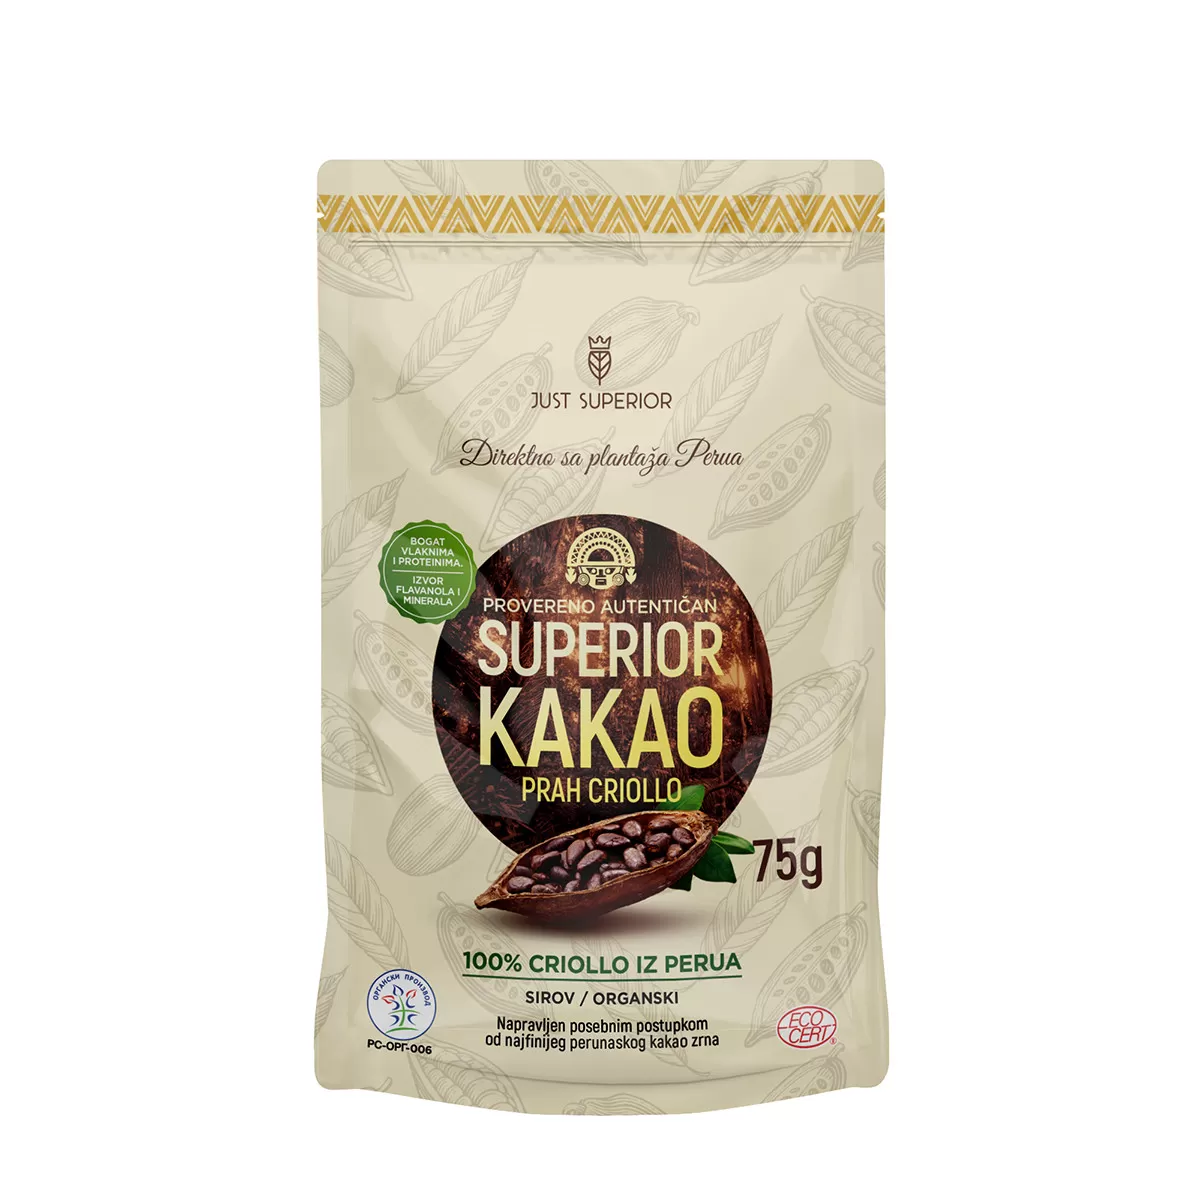 Superior organski kakao criollo prah, 75g 